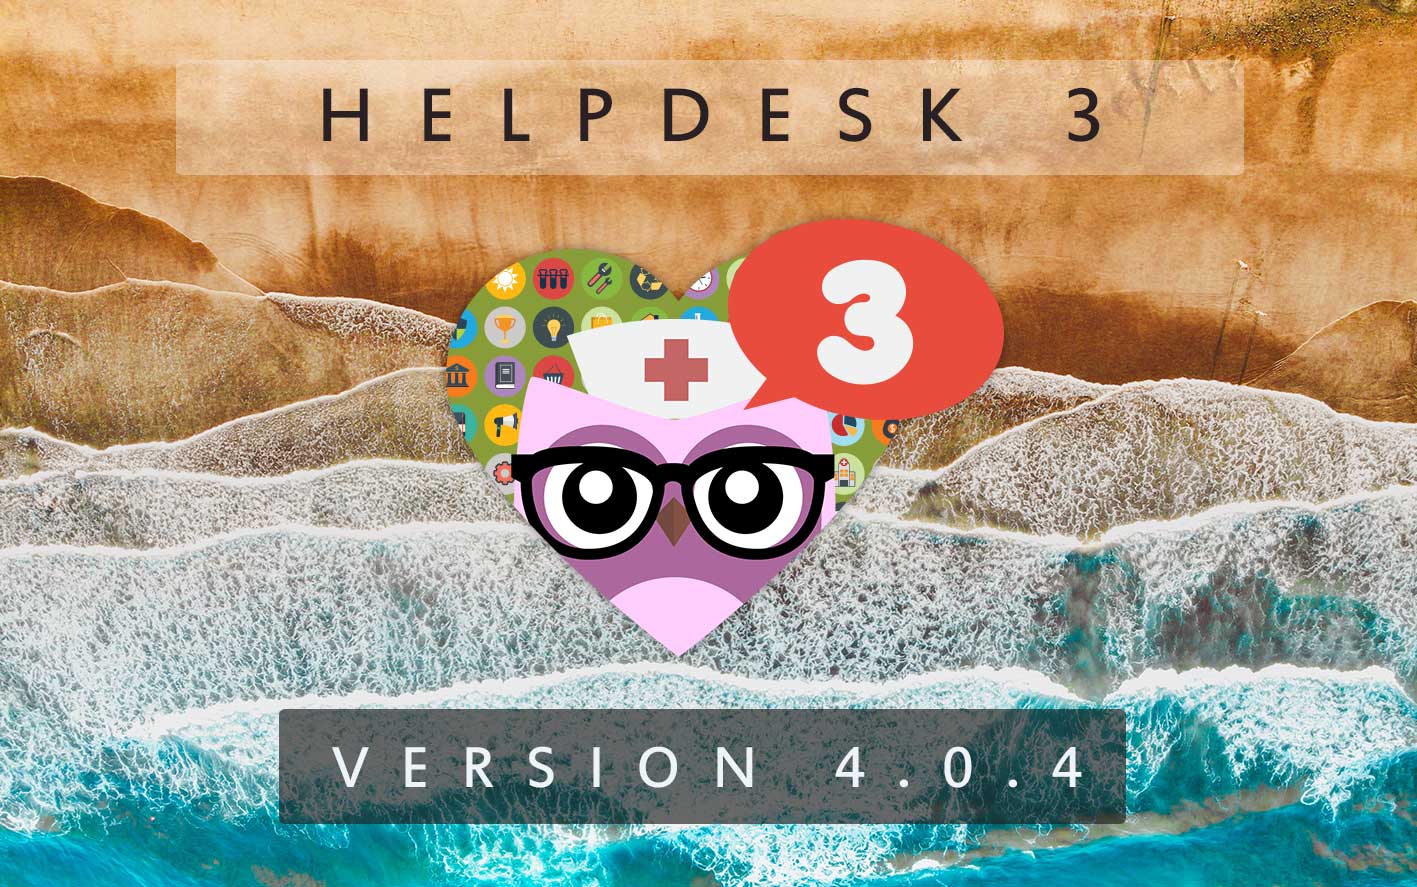 HelpDesk 3 - Version 4.0.4